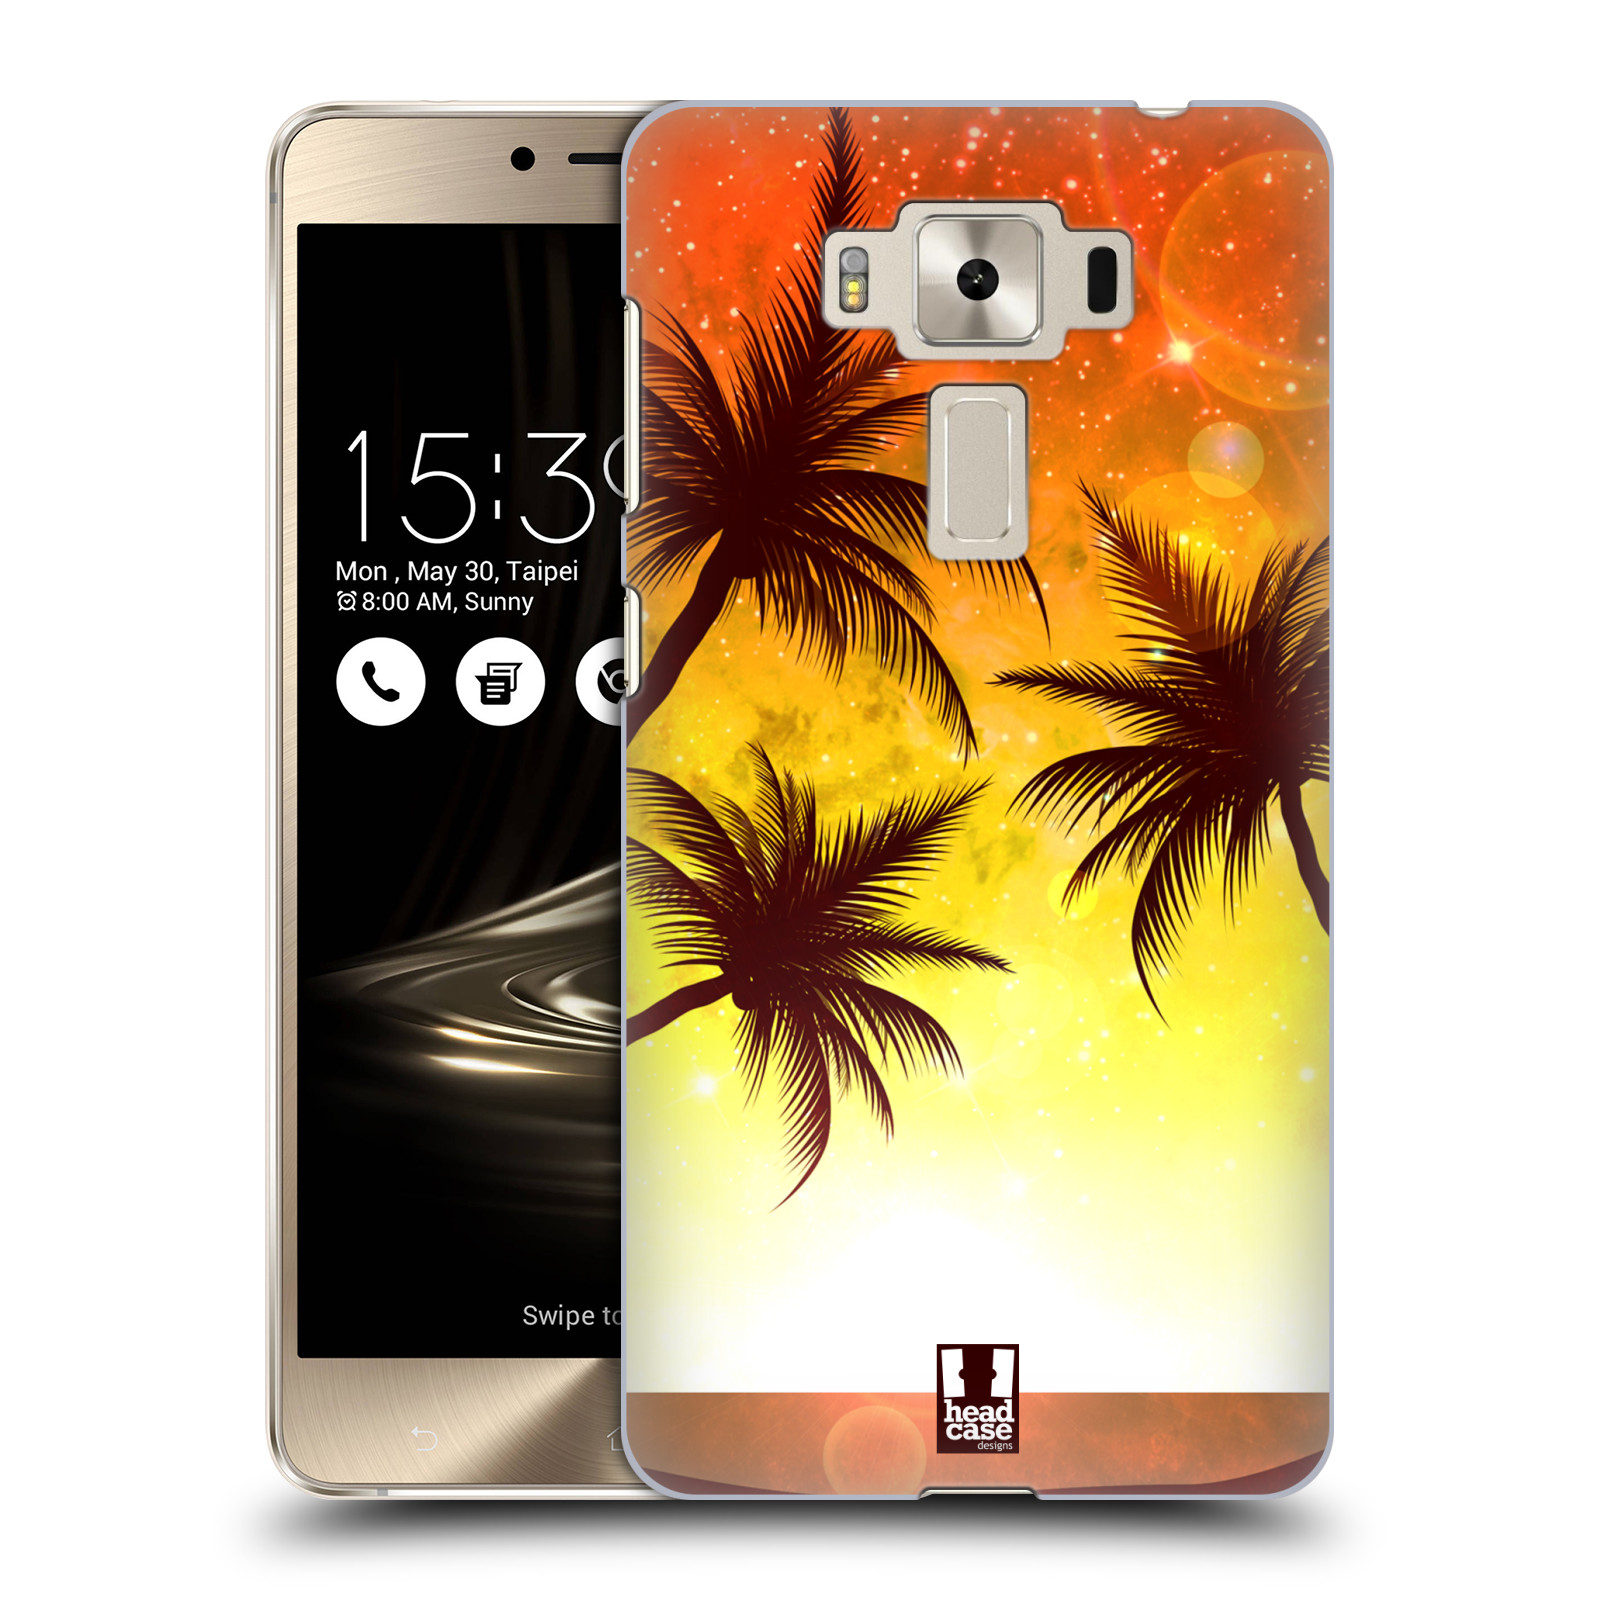 HEAD CASE plastový obal na mobil Asus Zenfone 3 DELUXE ZS550KL vzor Kreslený motiv silueta moře a palmy ORANŽOVÁ